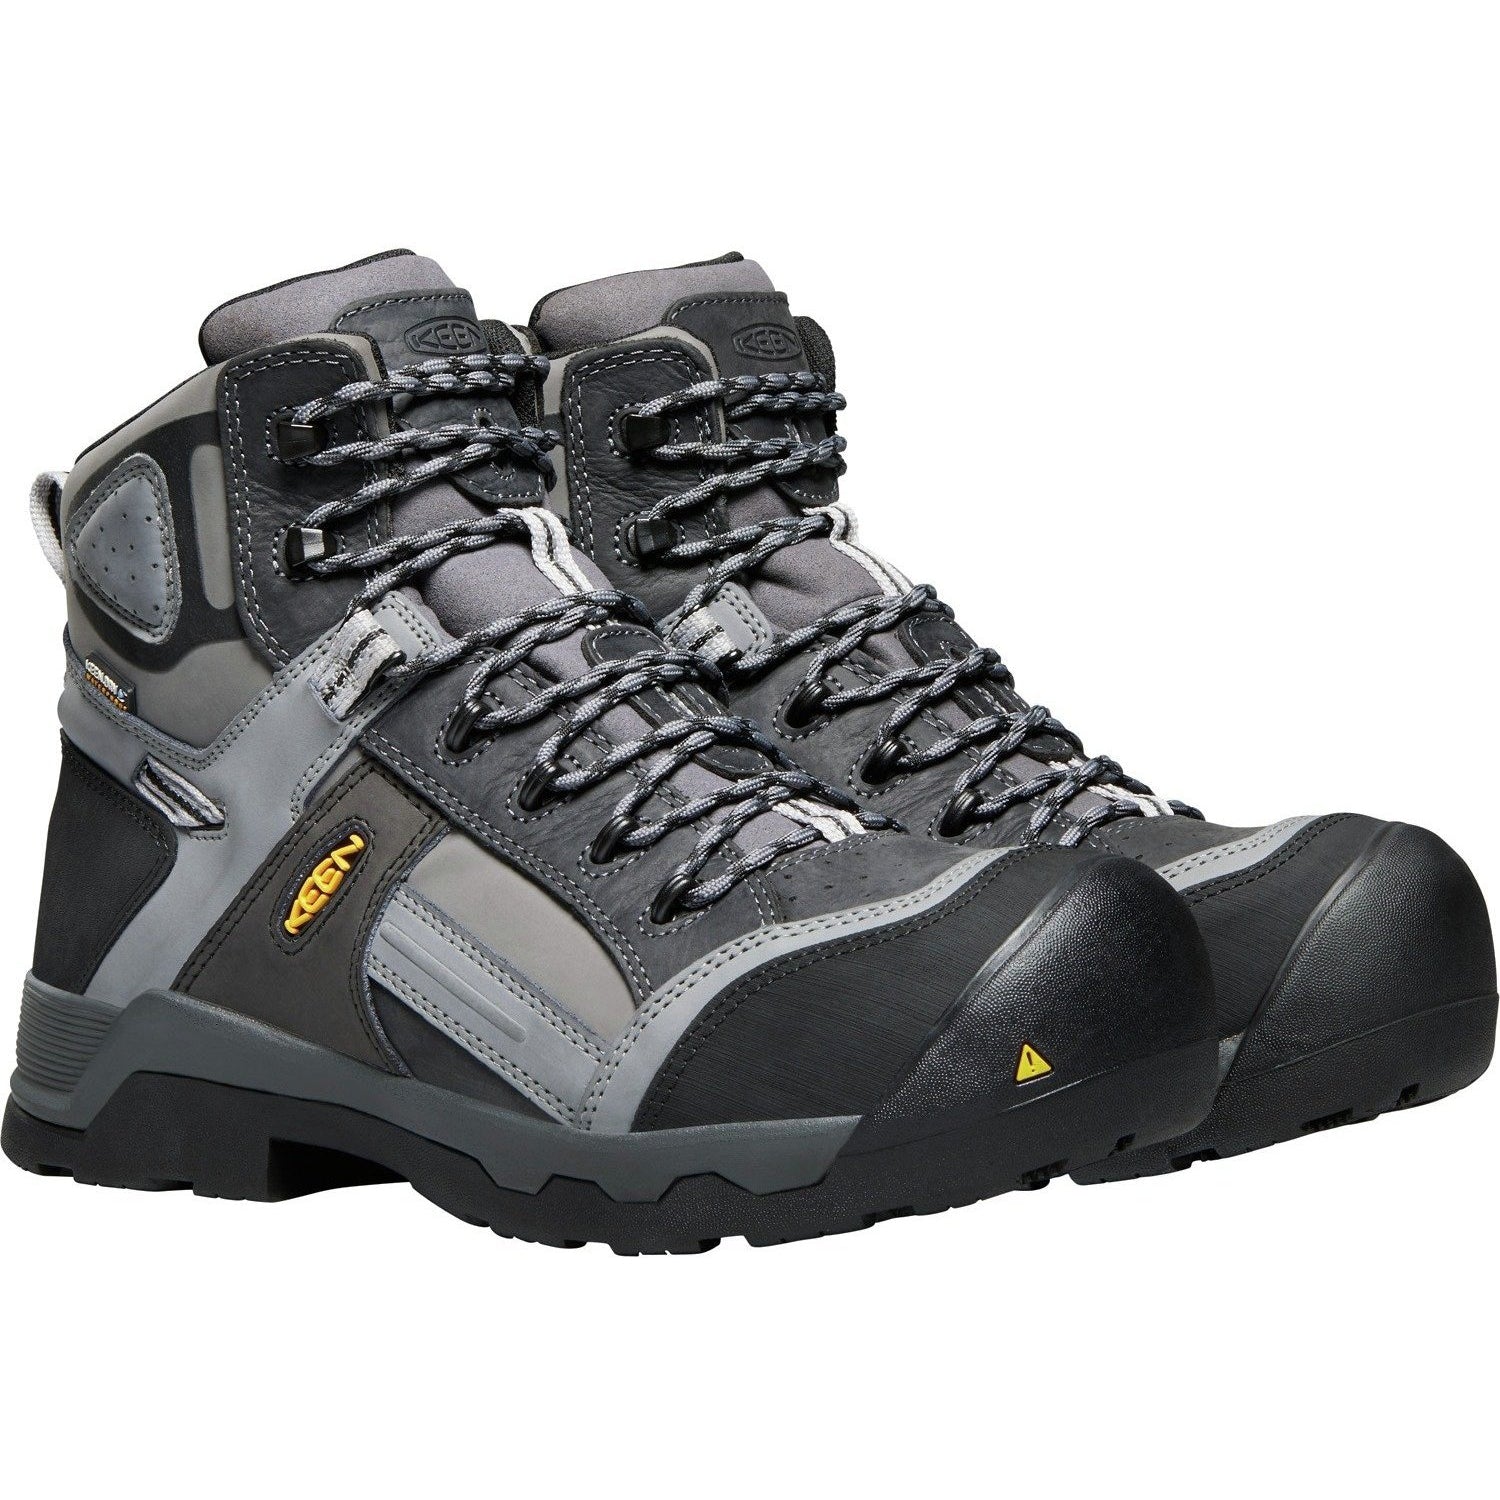 Keen Utility Men's Davenport 6" Mid Comp Toe Ins WP Work Boot Gray - 1017804 8 / Medium / Gray - Overlook Boots